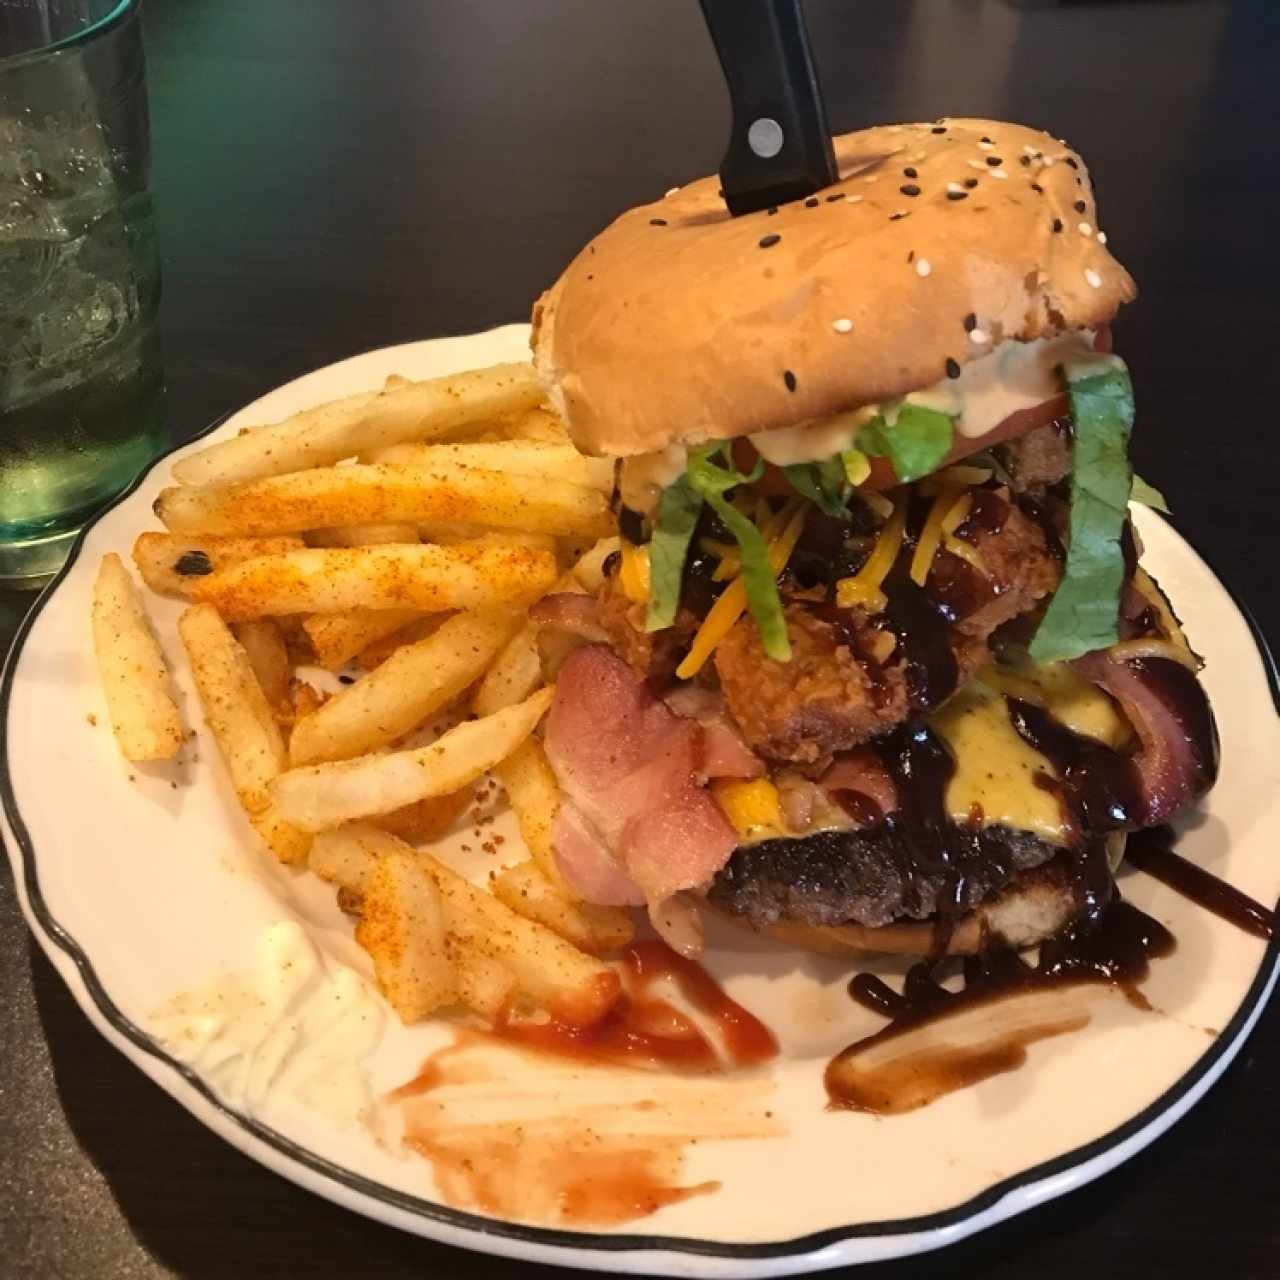 Monster burger